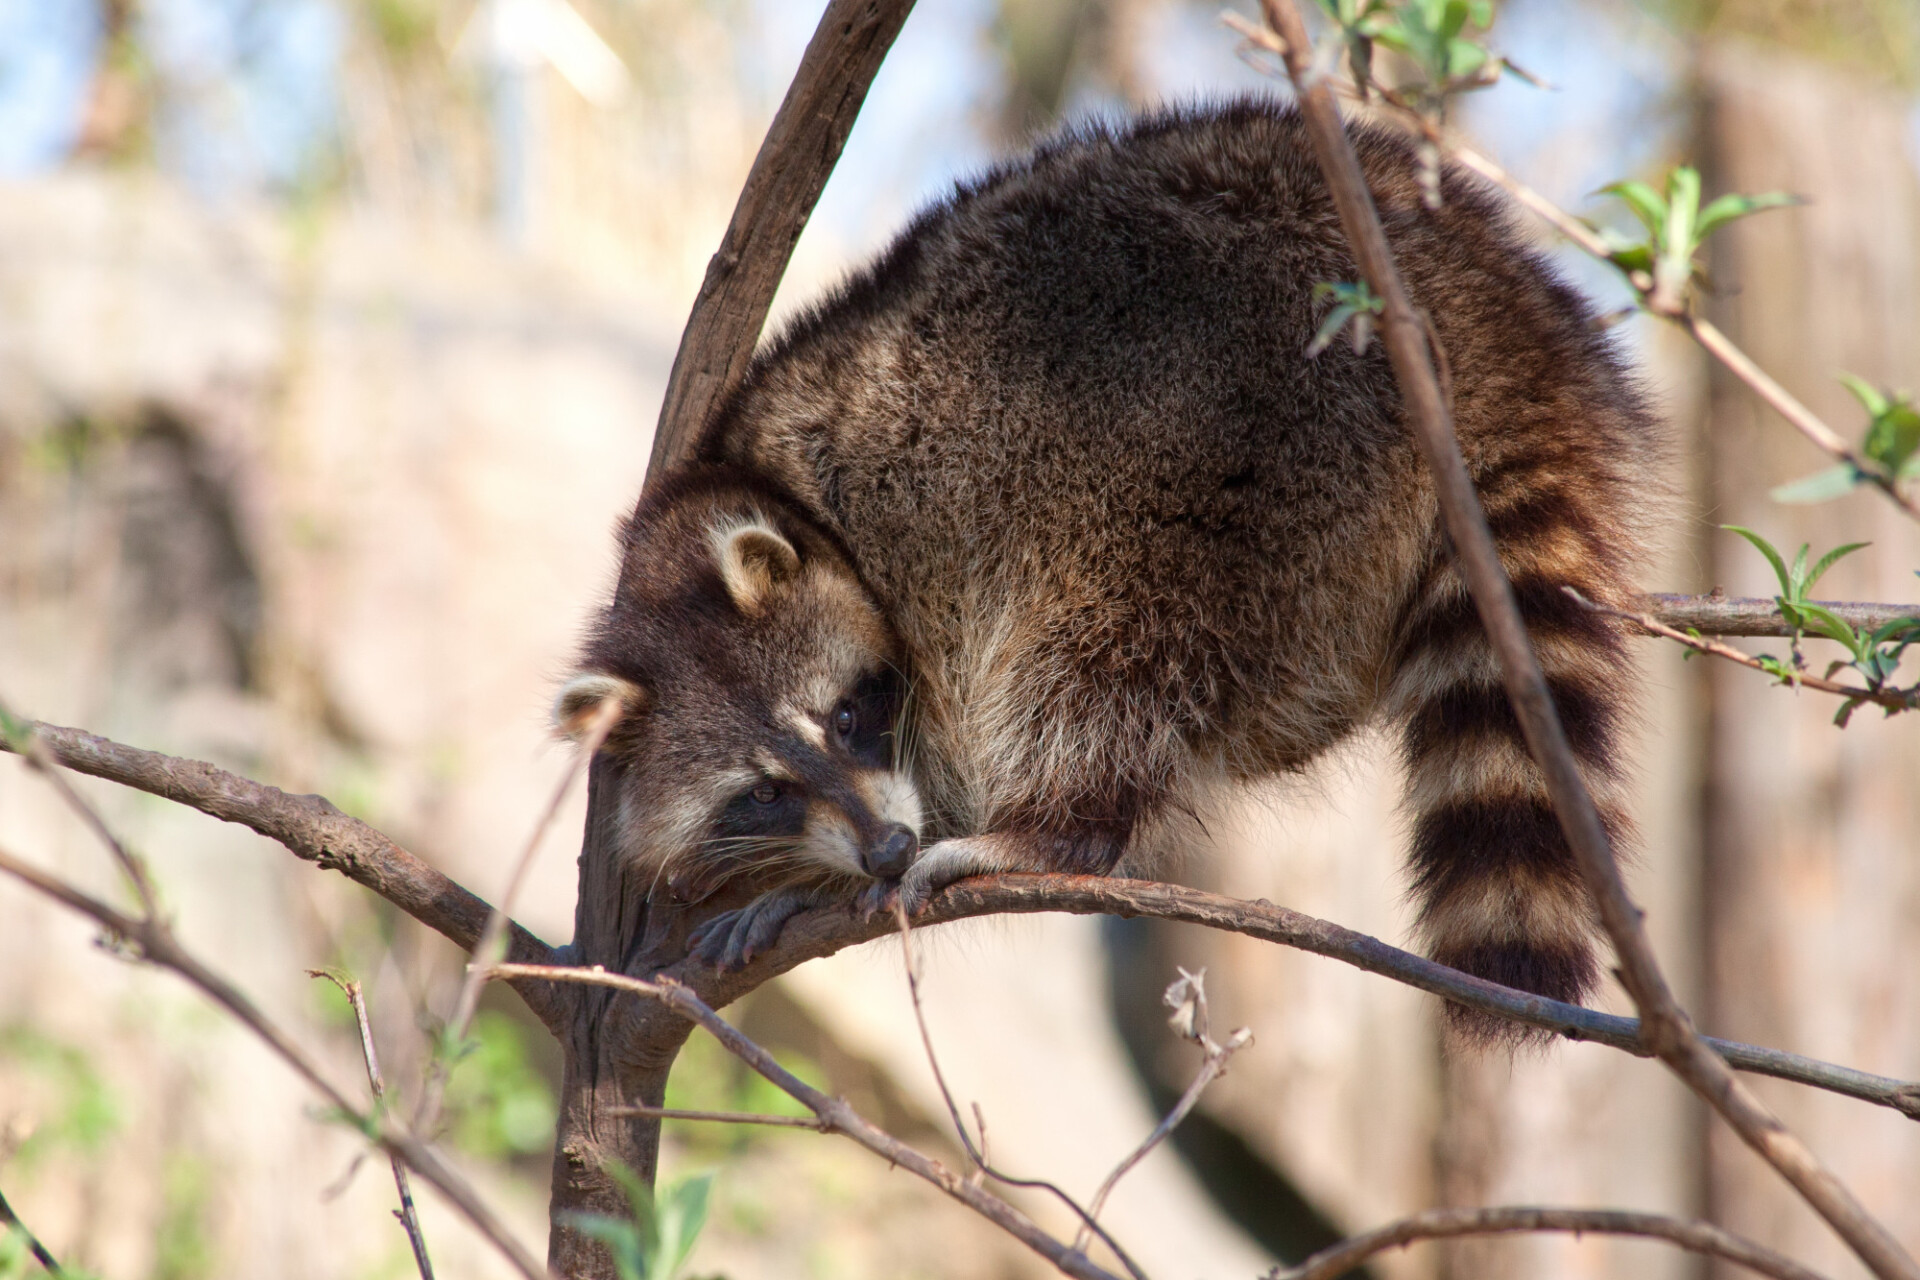 raccoon on tree